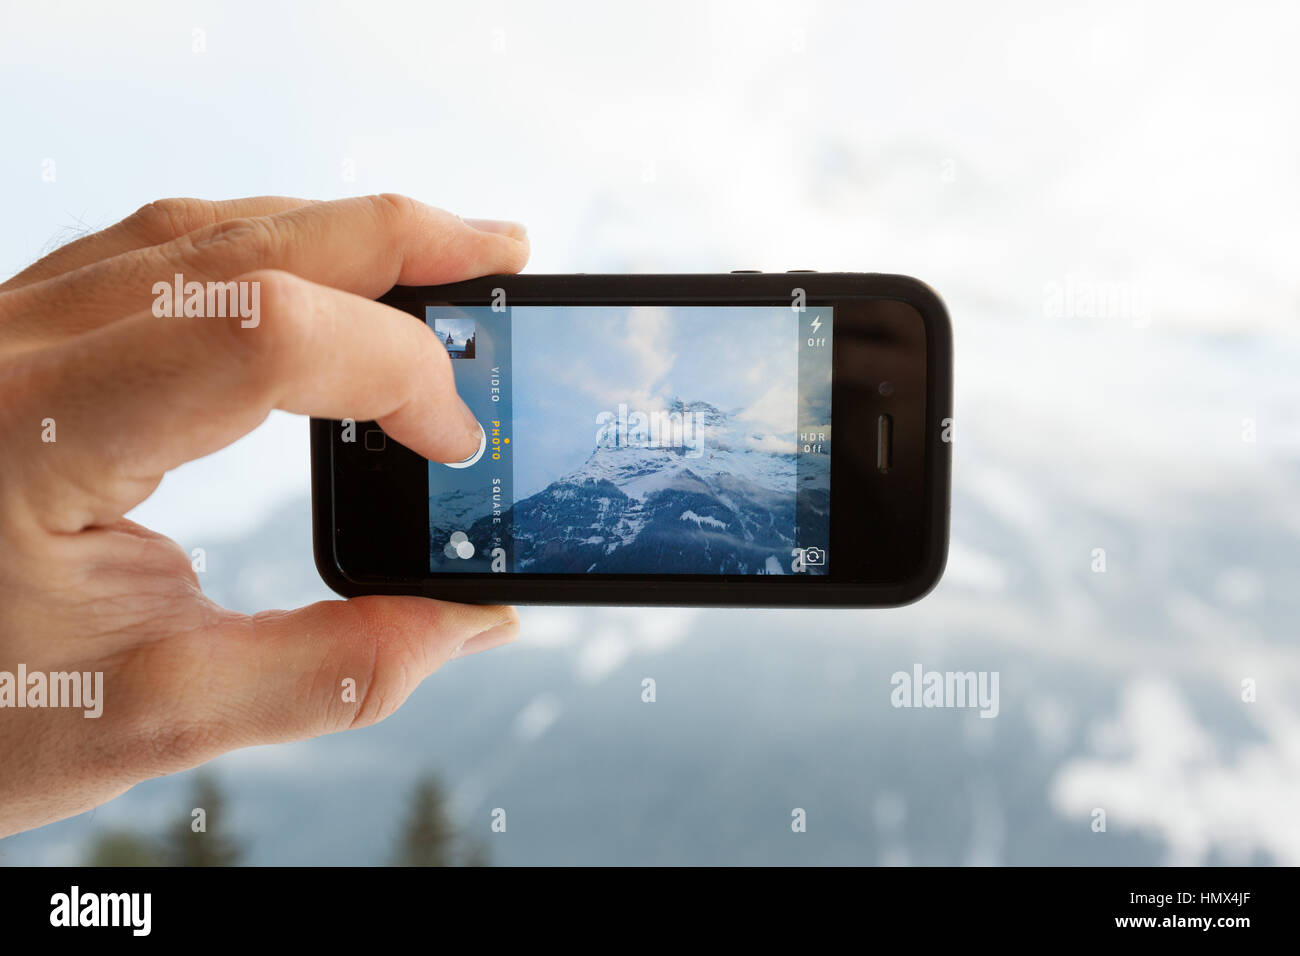 GRINDELWALD, Svizzera - 4 febbraio 2014: uomo prendendo una foto dell'Eiger montagna utilizzando l'app Fotocamera su un Apple iPhone 4s. Inquadratura ravvicinata del Foto Stock